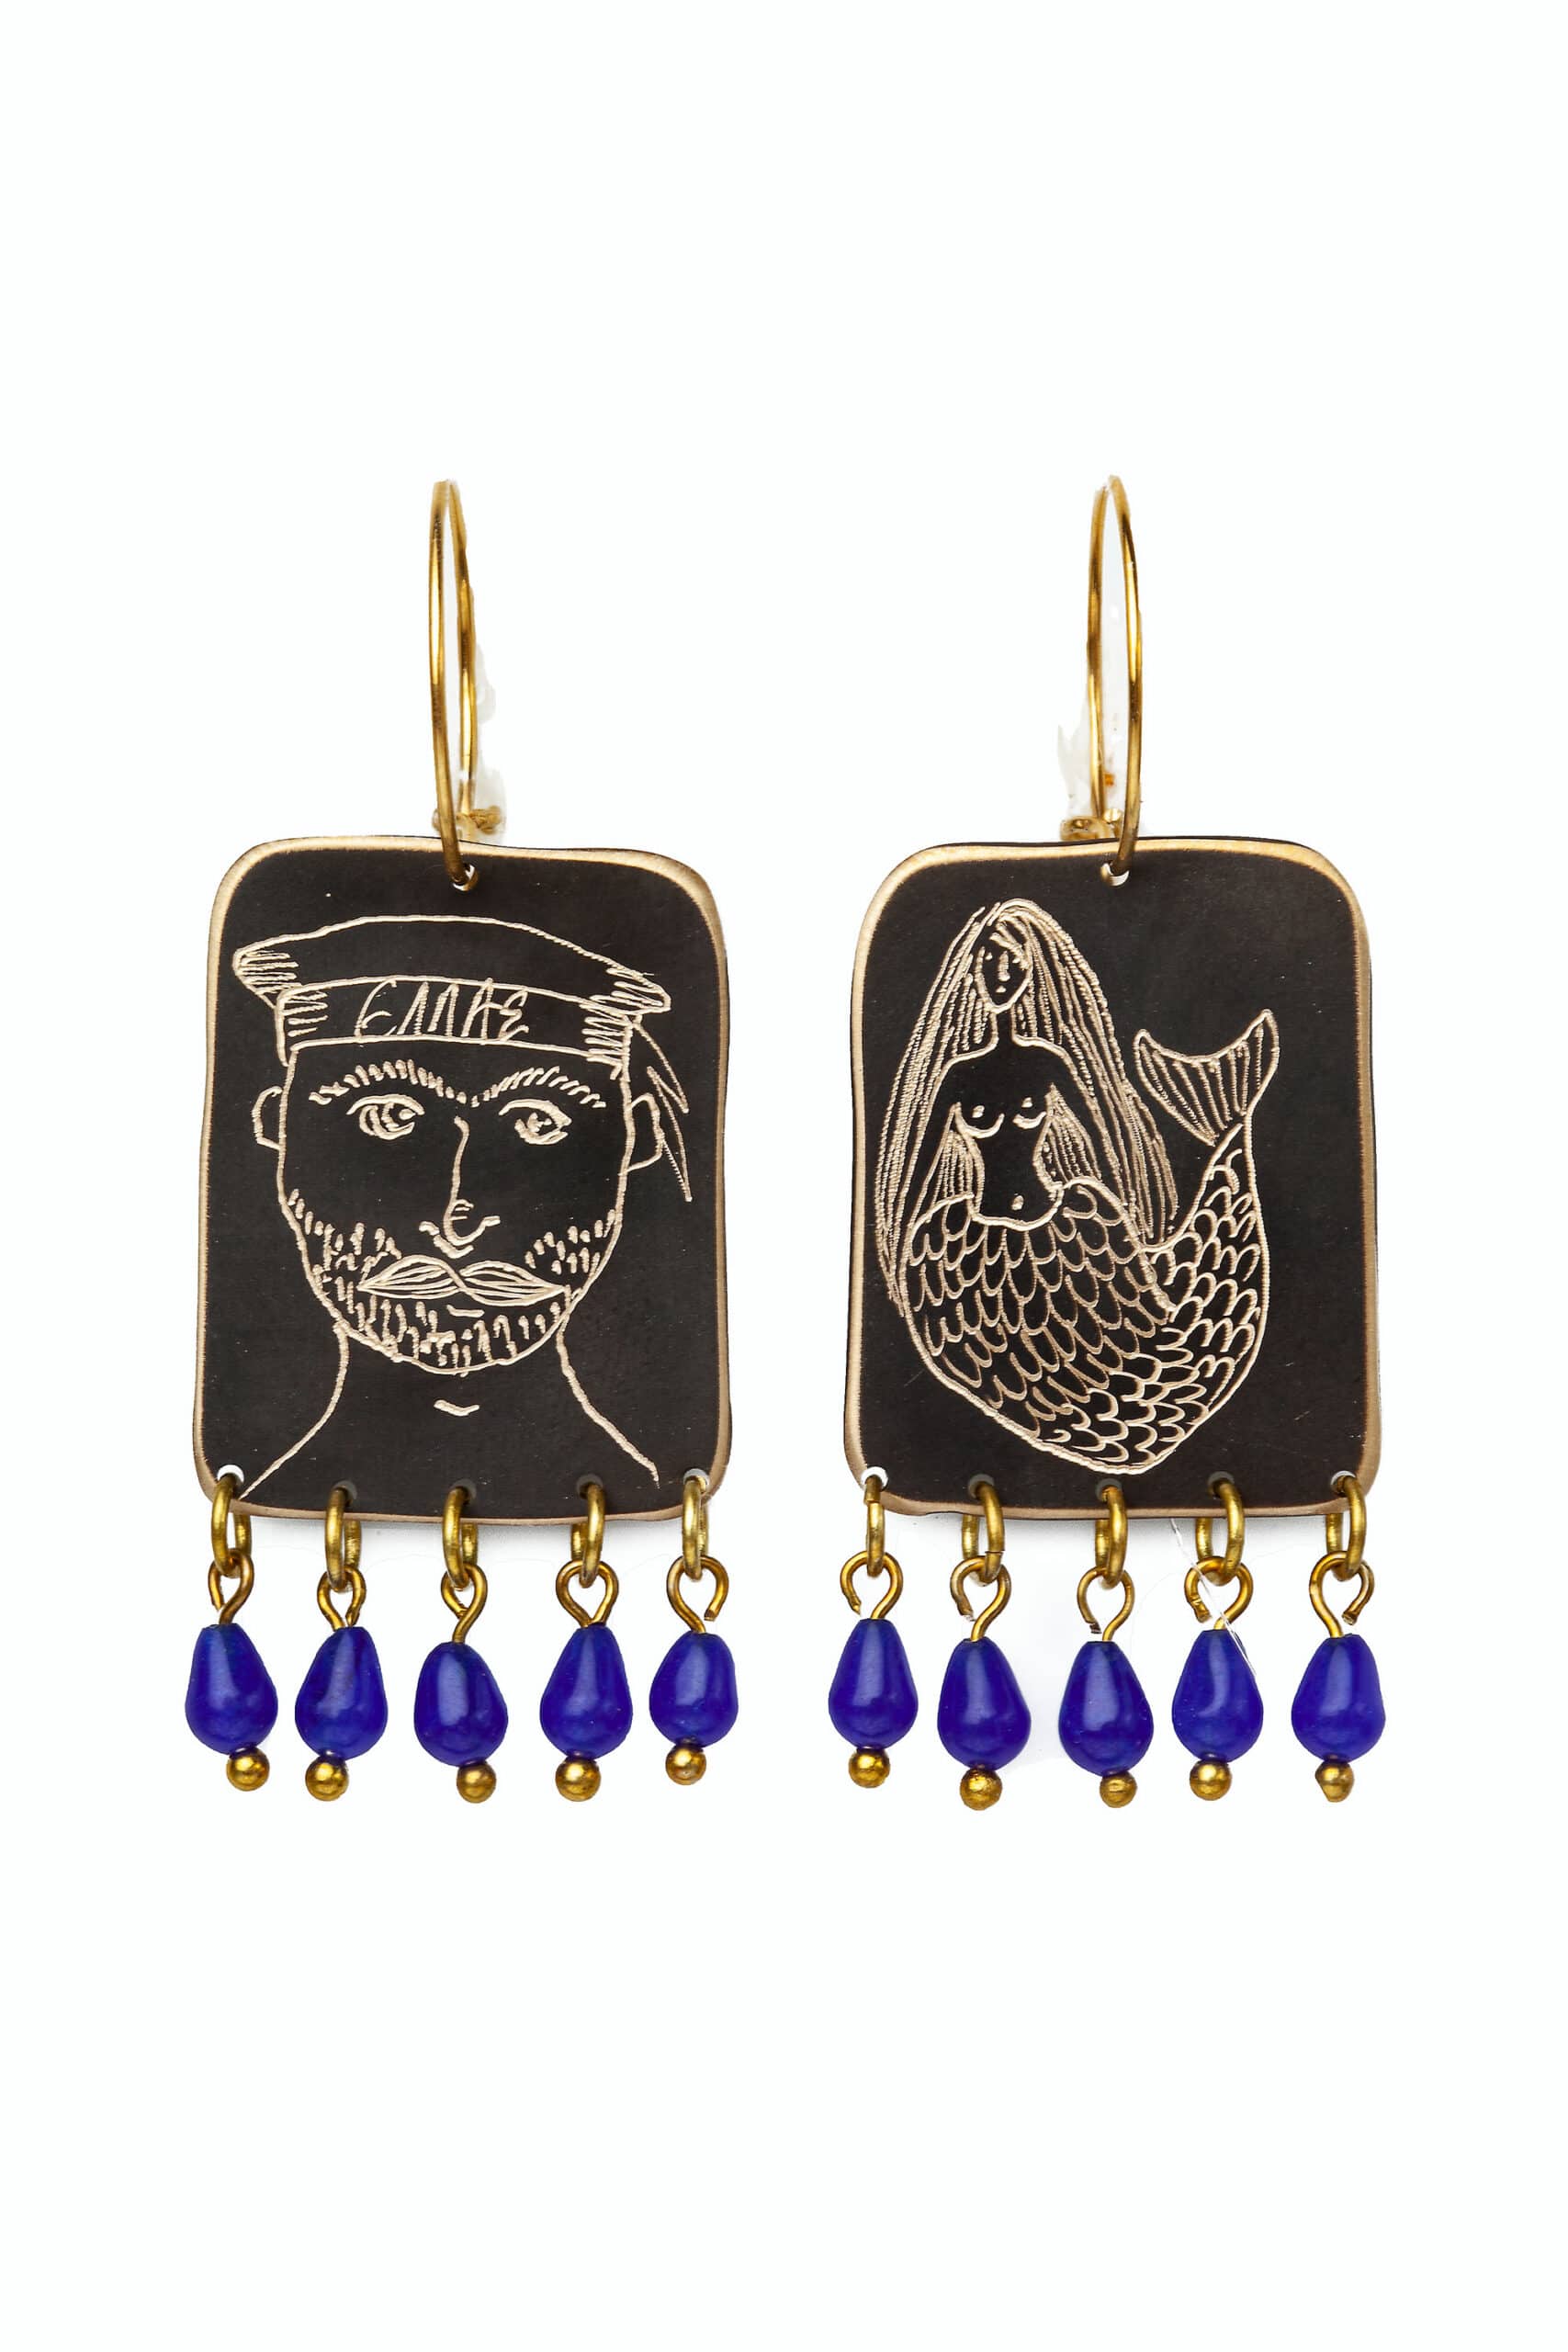 Χειροποίητα κοσμήματα | Σκουλαρίκια ορείχαλκου με χάραξη και διακοσμημένο με μπλε χαλαζία. Ασημένιοι επιχρυσωμένοι κρίκοι main